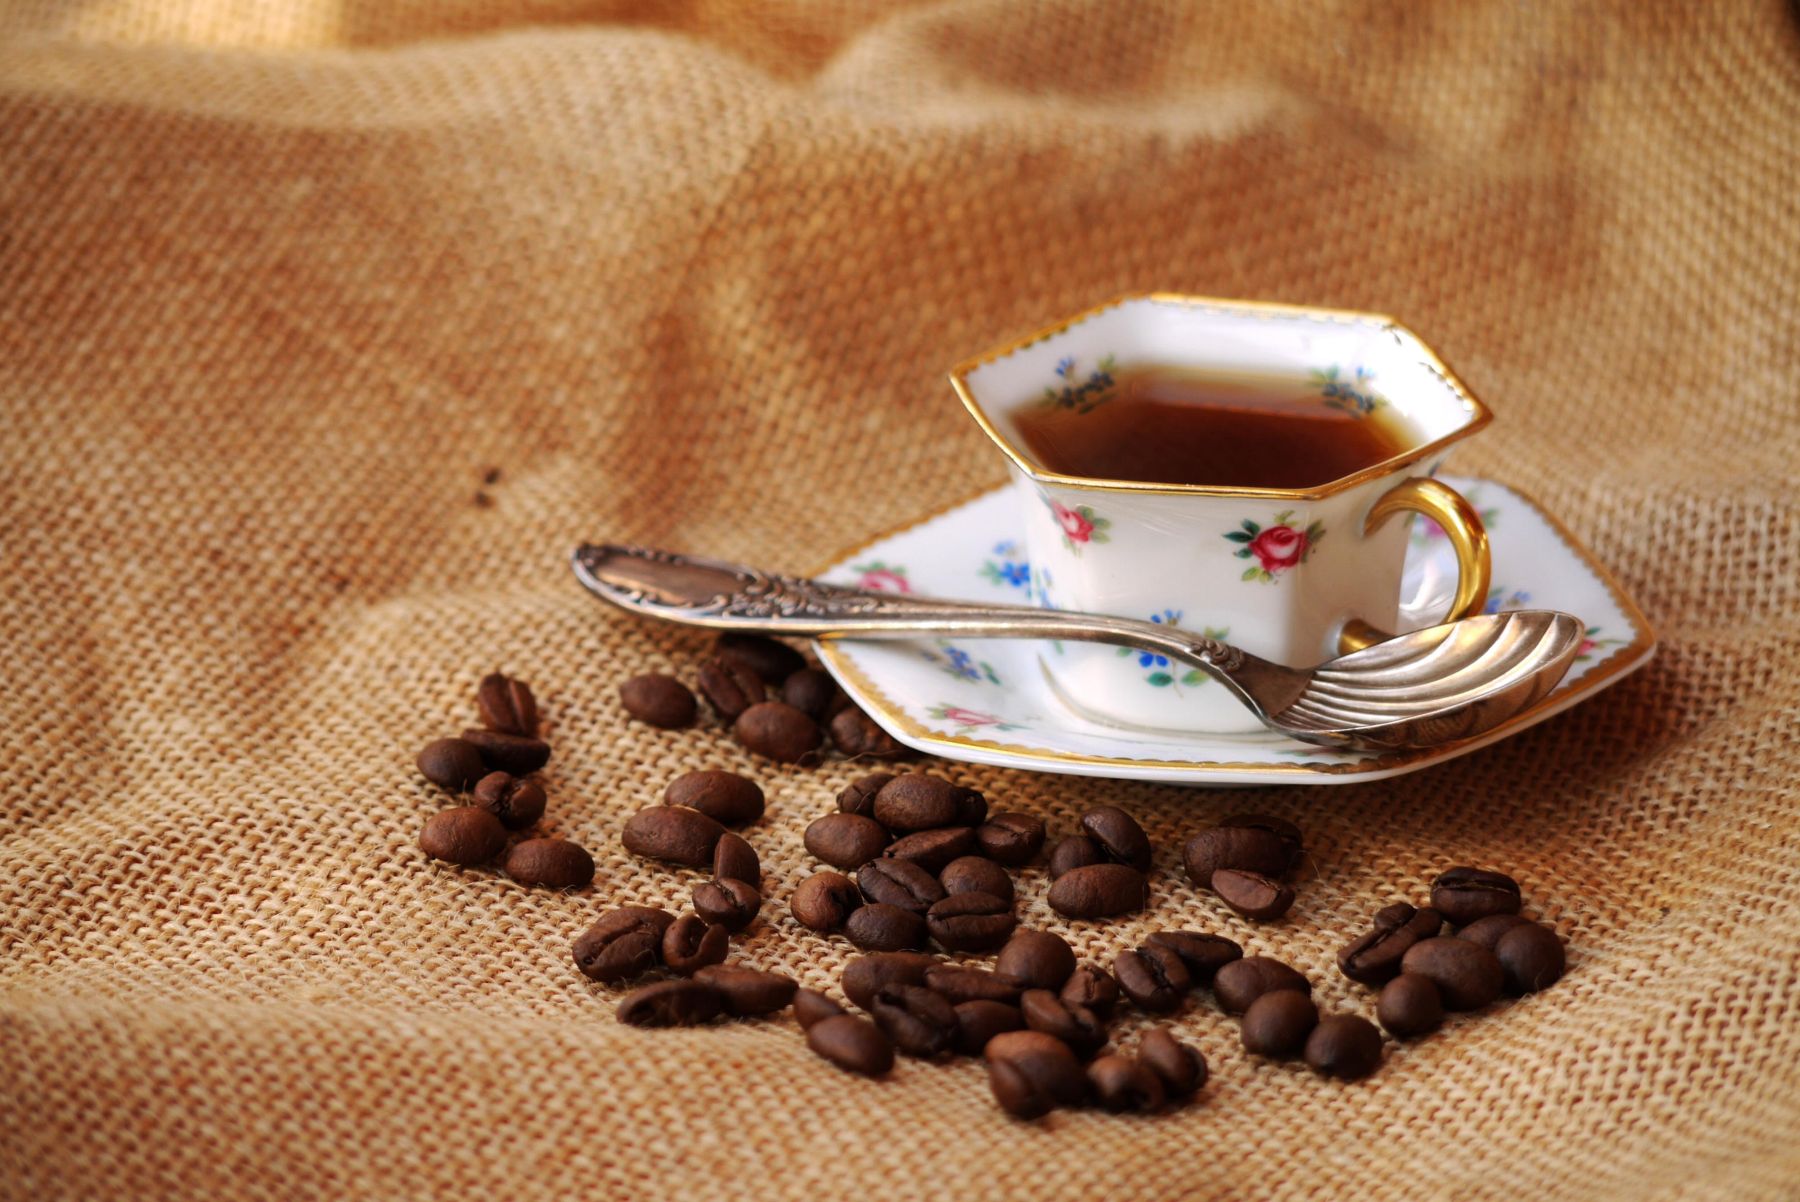 Alte Kaffetasse mit Kaffee darin und Bohnen davor auf einem Kaffeesack